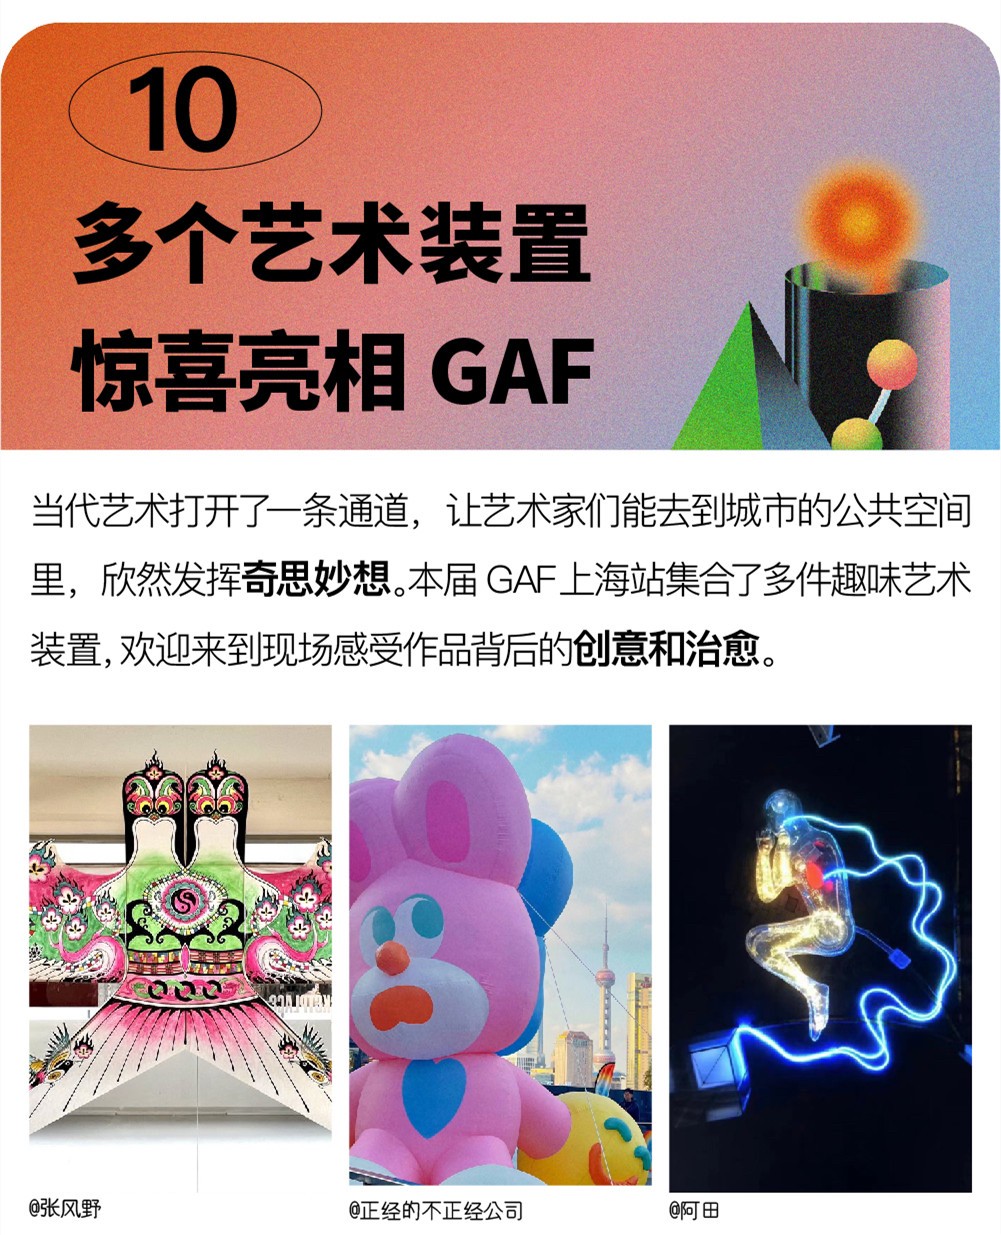 【五一】【GAF上海插画艺术节】来了！